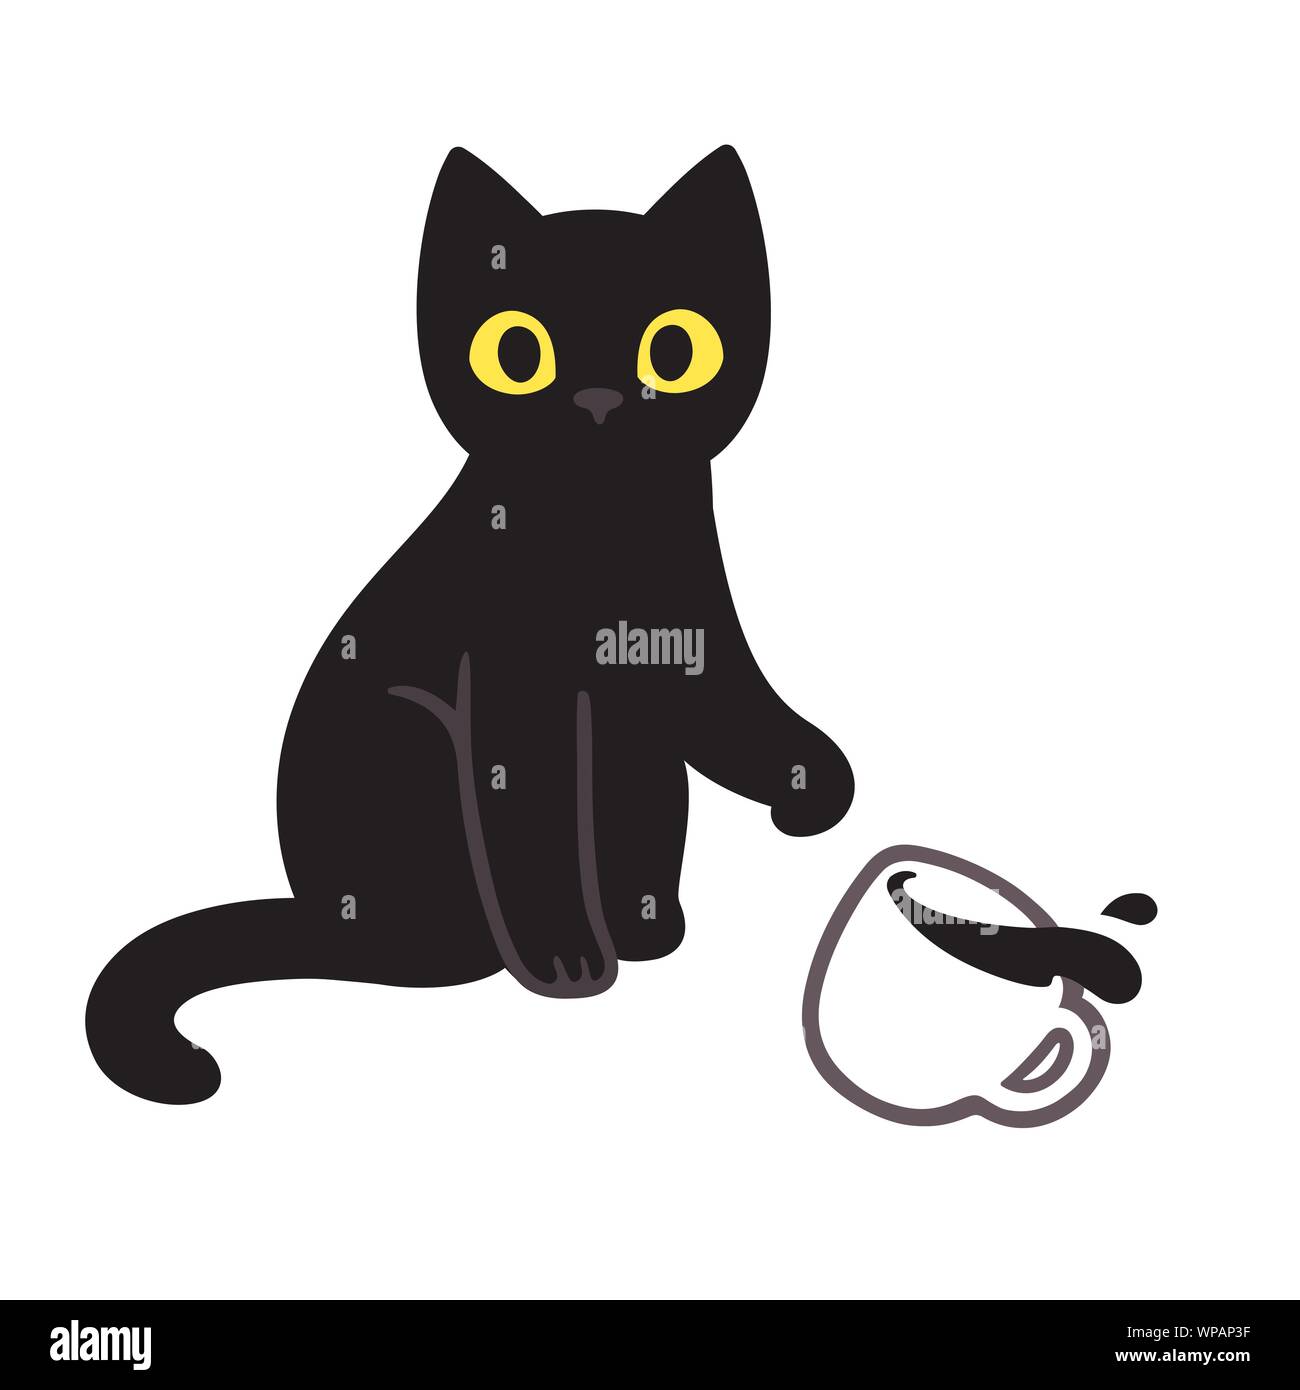 Süße kleine schwarze Katze werfen Kaffee Tasse vom Tisch. Lustige Katze  brechen Dinge comic Illustration, cartoon Vektor Zeichnung  Stock-Vektorgrafik - Alamy